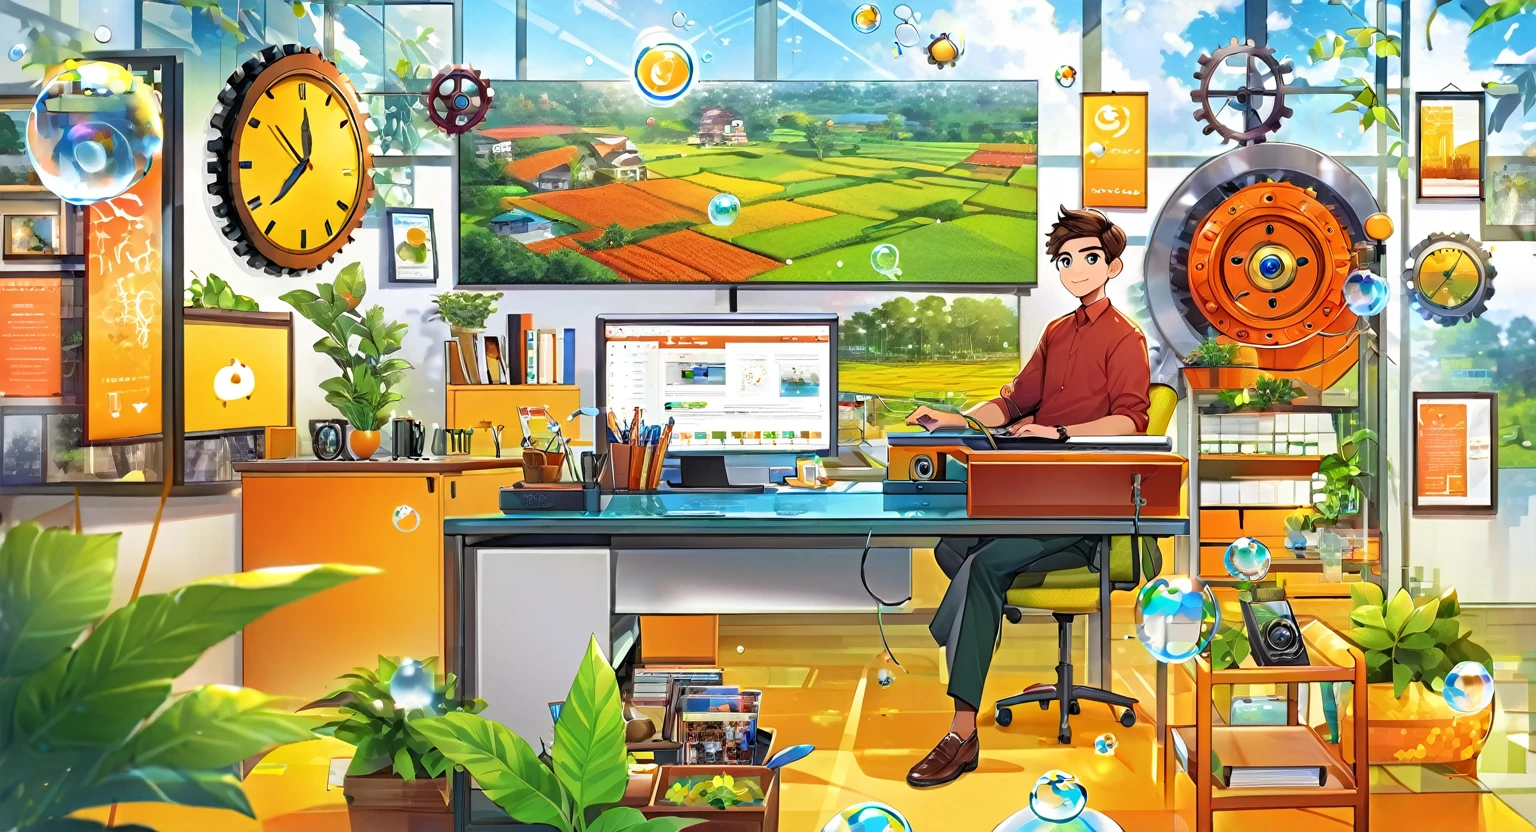 (방글라데시)), poster image of a vibrant landscape of 방글라데시, 전통과 기술이 만나는 곳, 스마트 빌리지가 등장하다. 방글라데시i boy sitting at a desk with a computer monitor in front of them. 디지털 또는 사무 환경을 제안하는 아이콘 요소, 기어와 같은, 시계, 채팅 거품, 보안 잠금 기호. 이미지 왼쪽에는 설정의 장식을 더해주는 나뭇잎도 있습니다.. 이 이미지는 원격 근무와 관련된 주제와 관련이 있거나 흥미로울 수 있습니다., 사무실 설정, 디지털 커뮤니케이션, 또는 개인용 컴퓨터 사용.